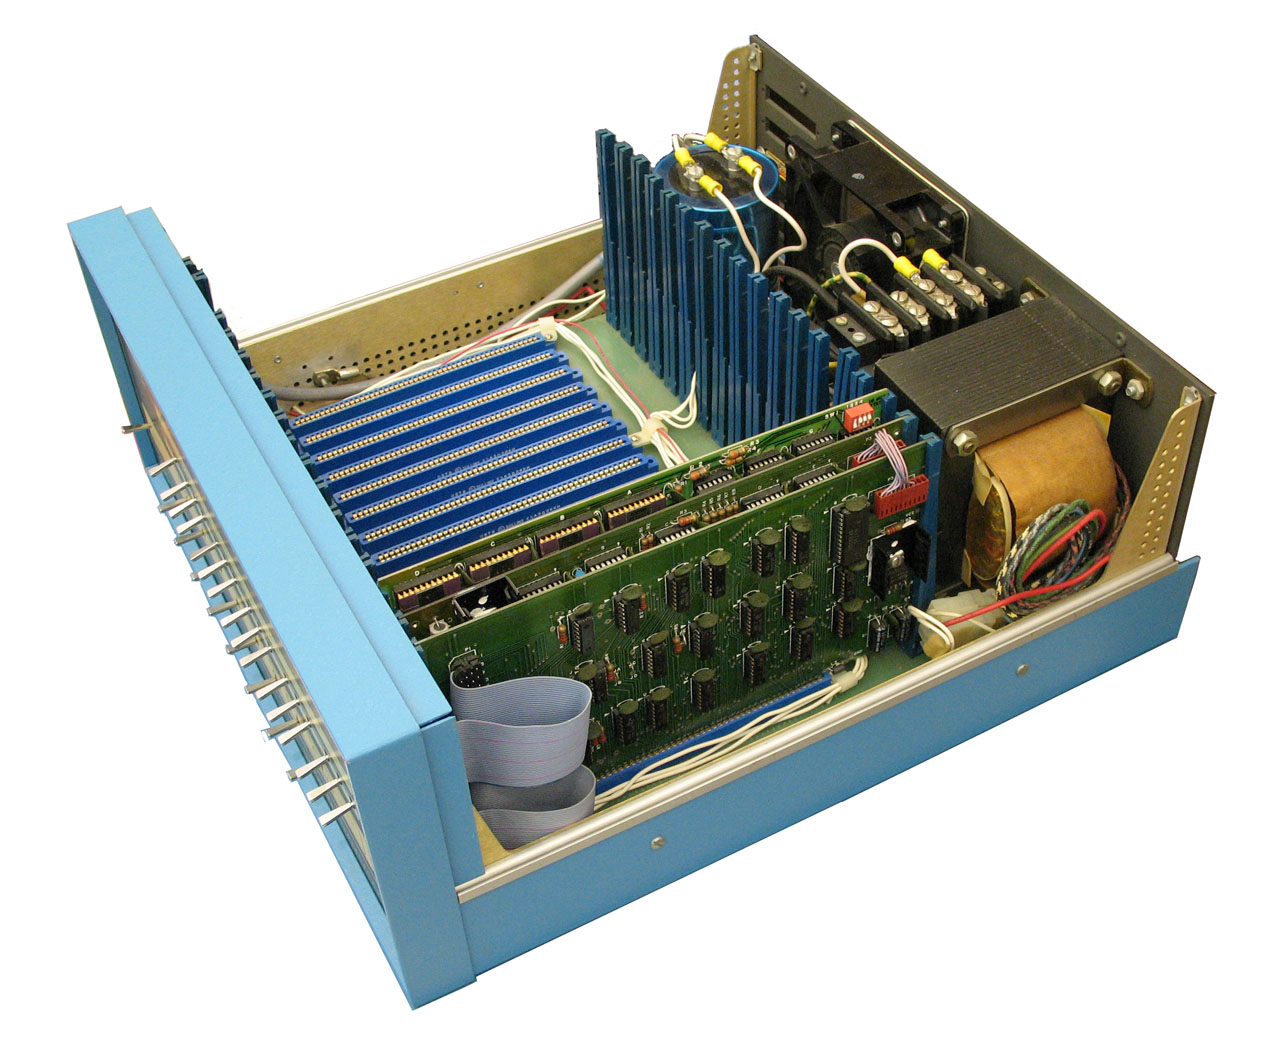 "Altair 8800b Computer" di Swtpc6800 en:User:Swtpc6800 Michael Holley - Opera propria. Con licenza Pubblico dominio tramite Wikimedia Commons.